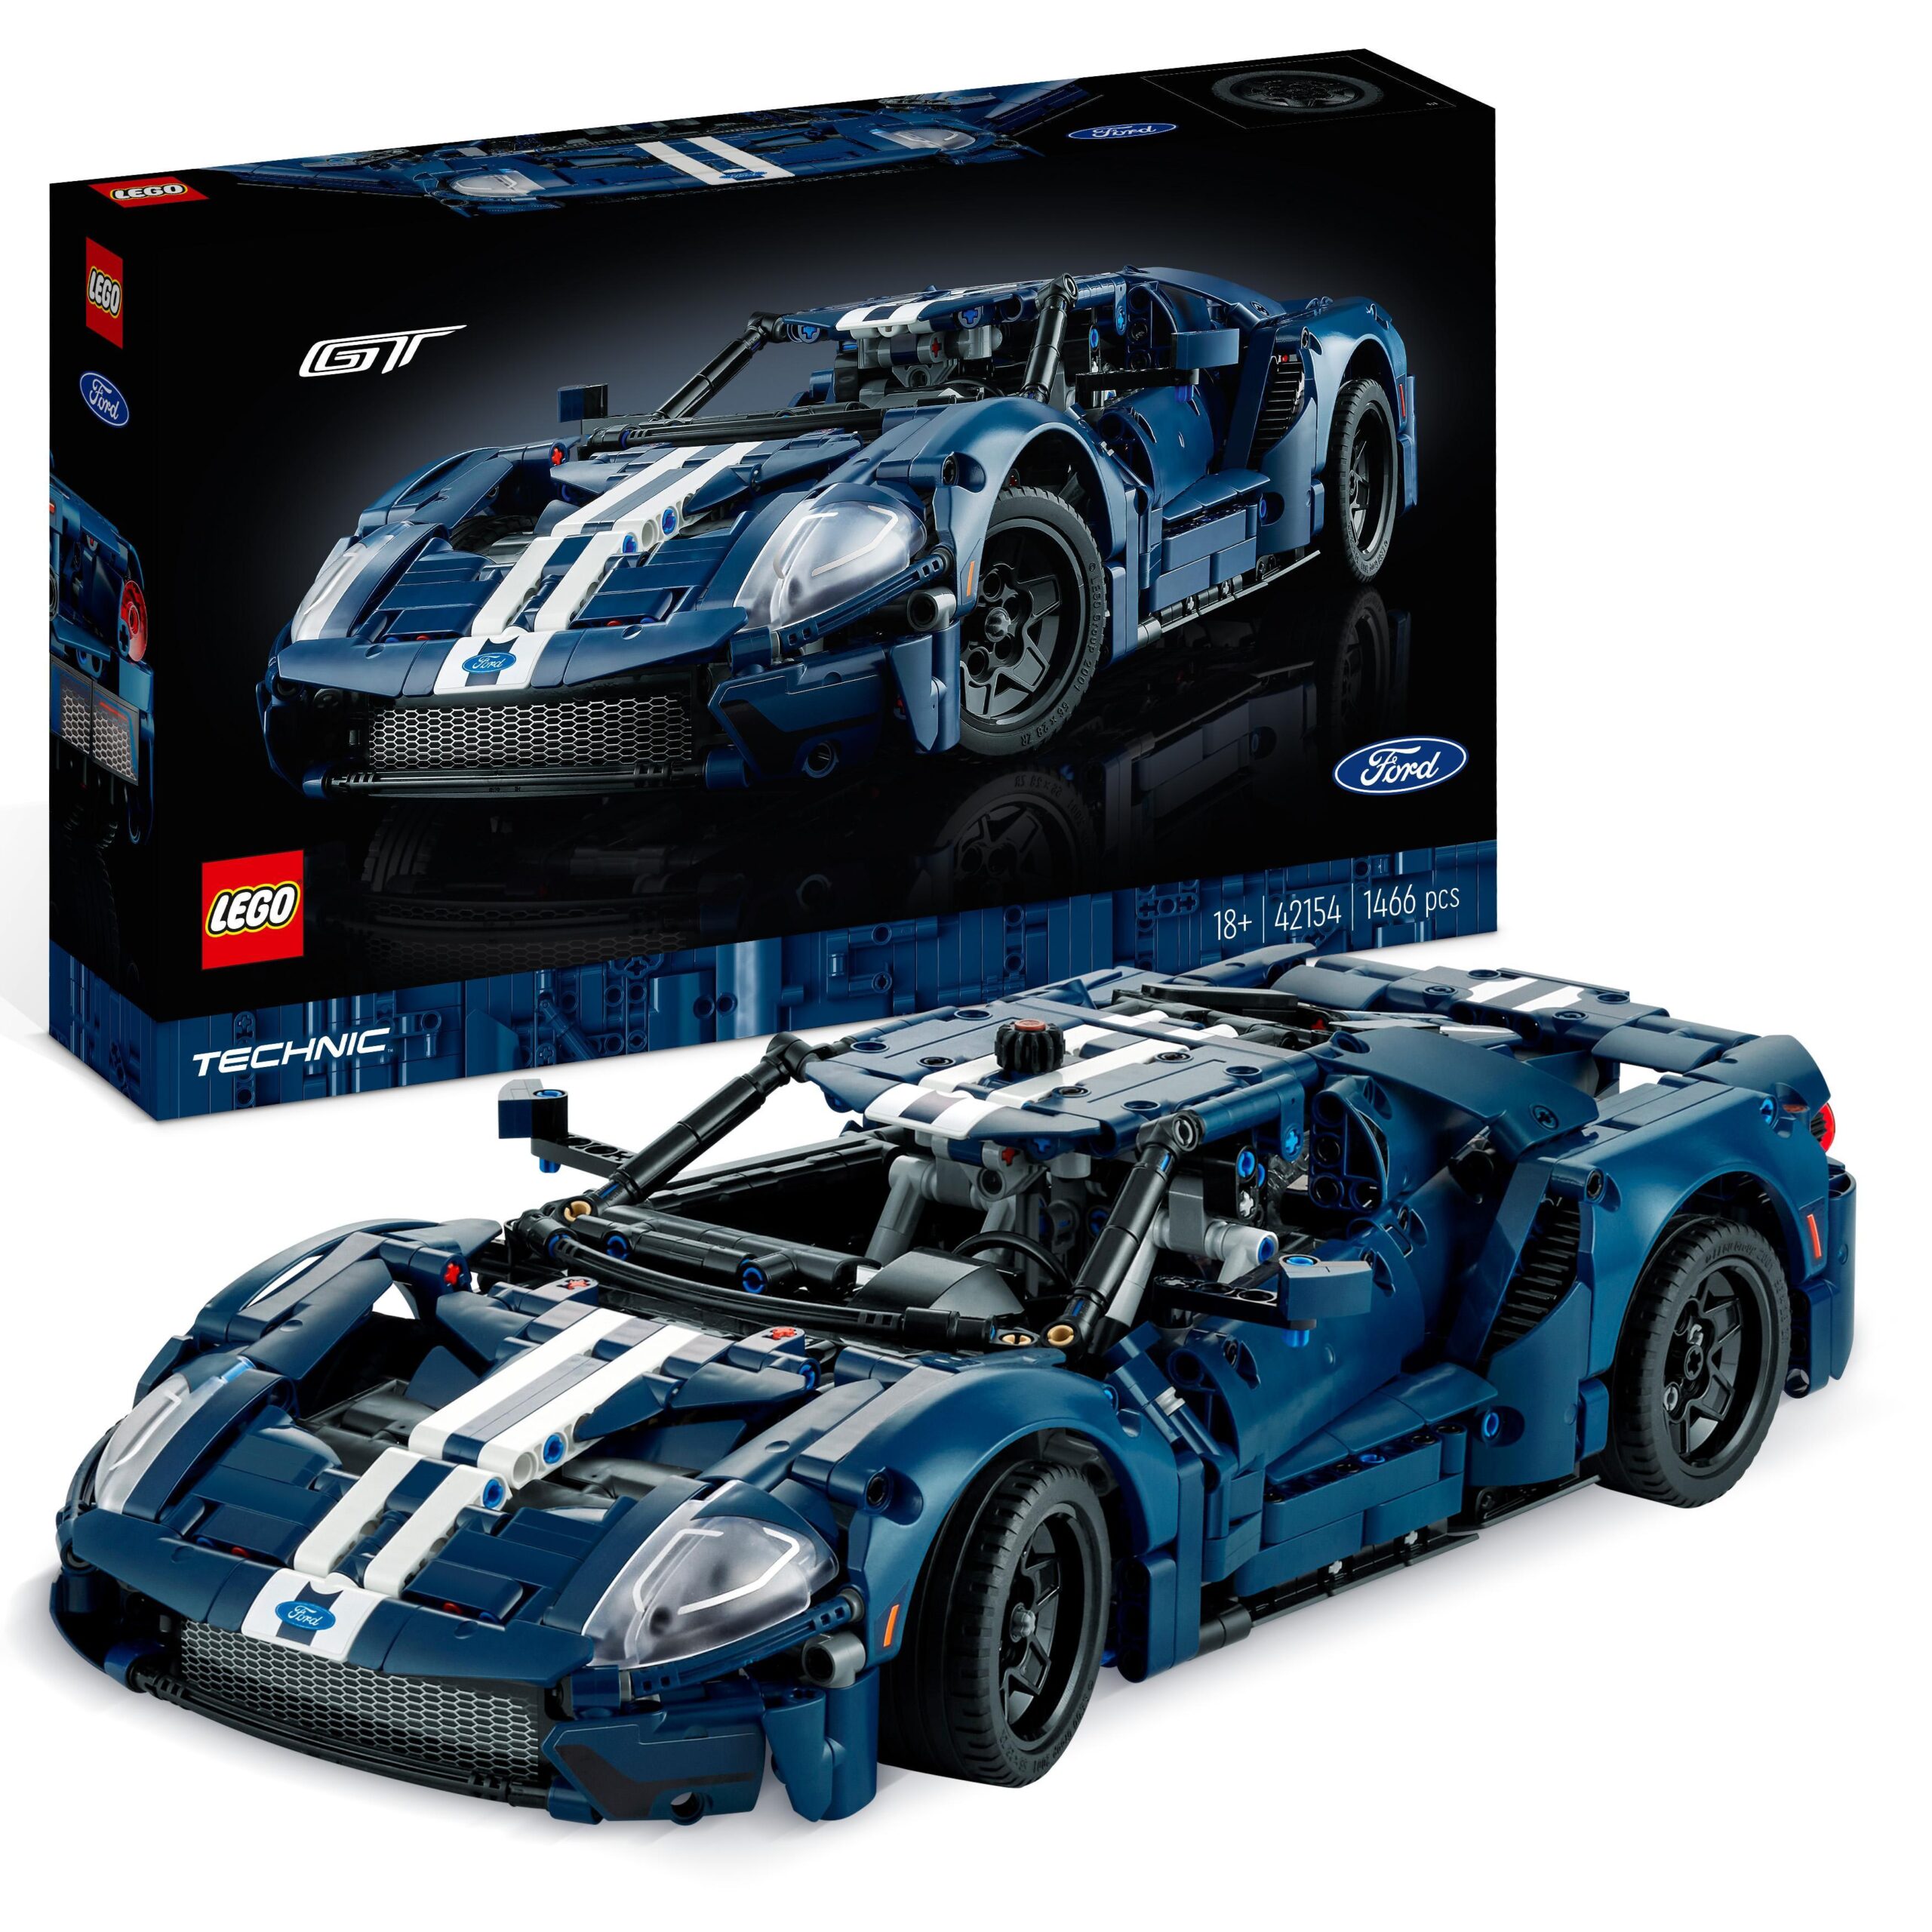 LEGO Technic 42154 Ford GT 2022, Kit Modellino Auto, Supercar in